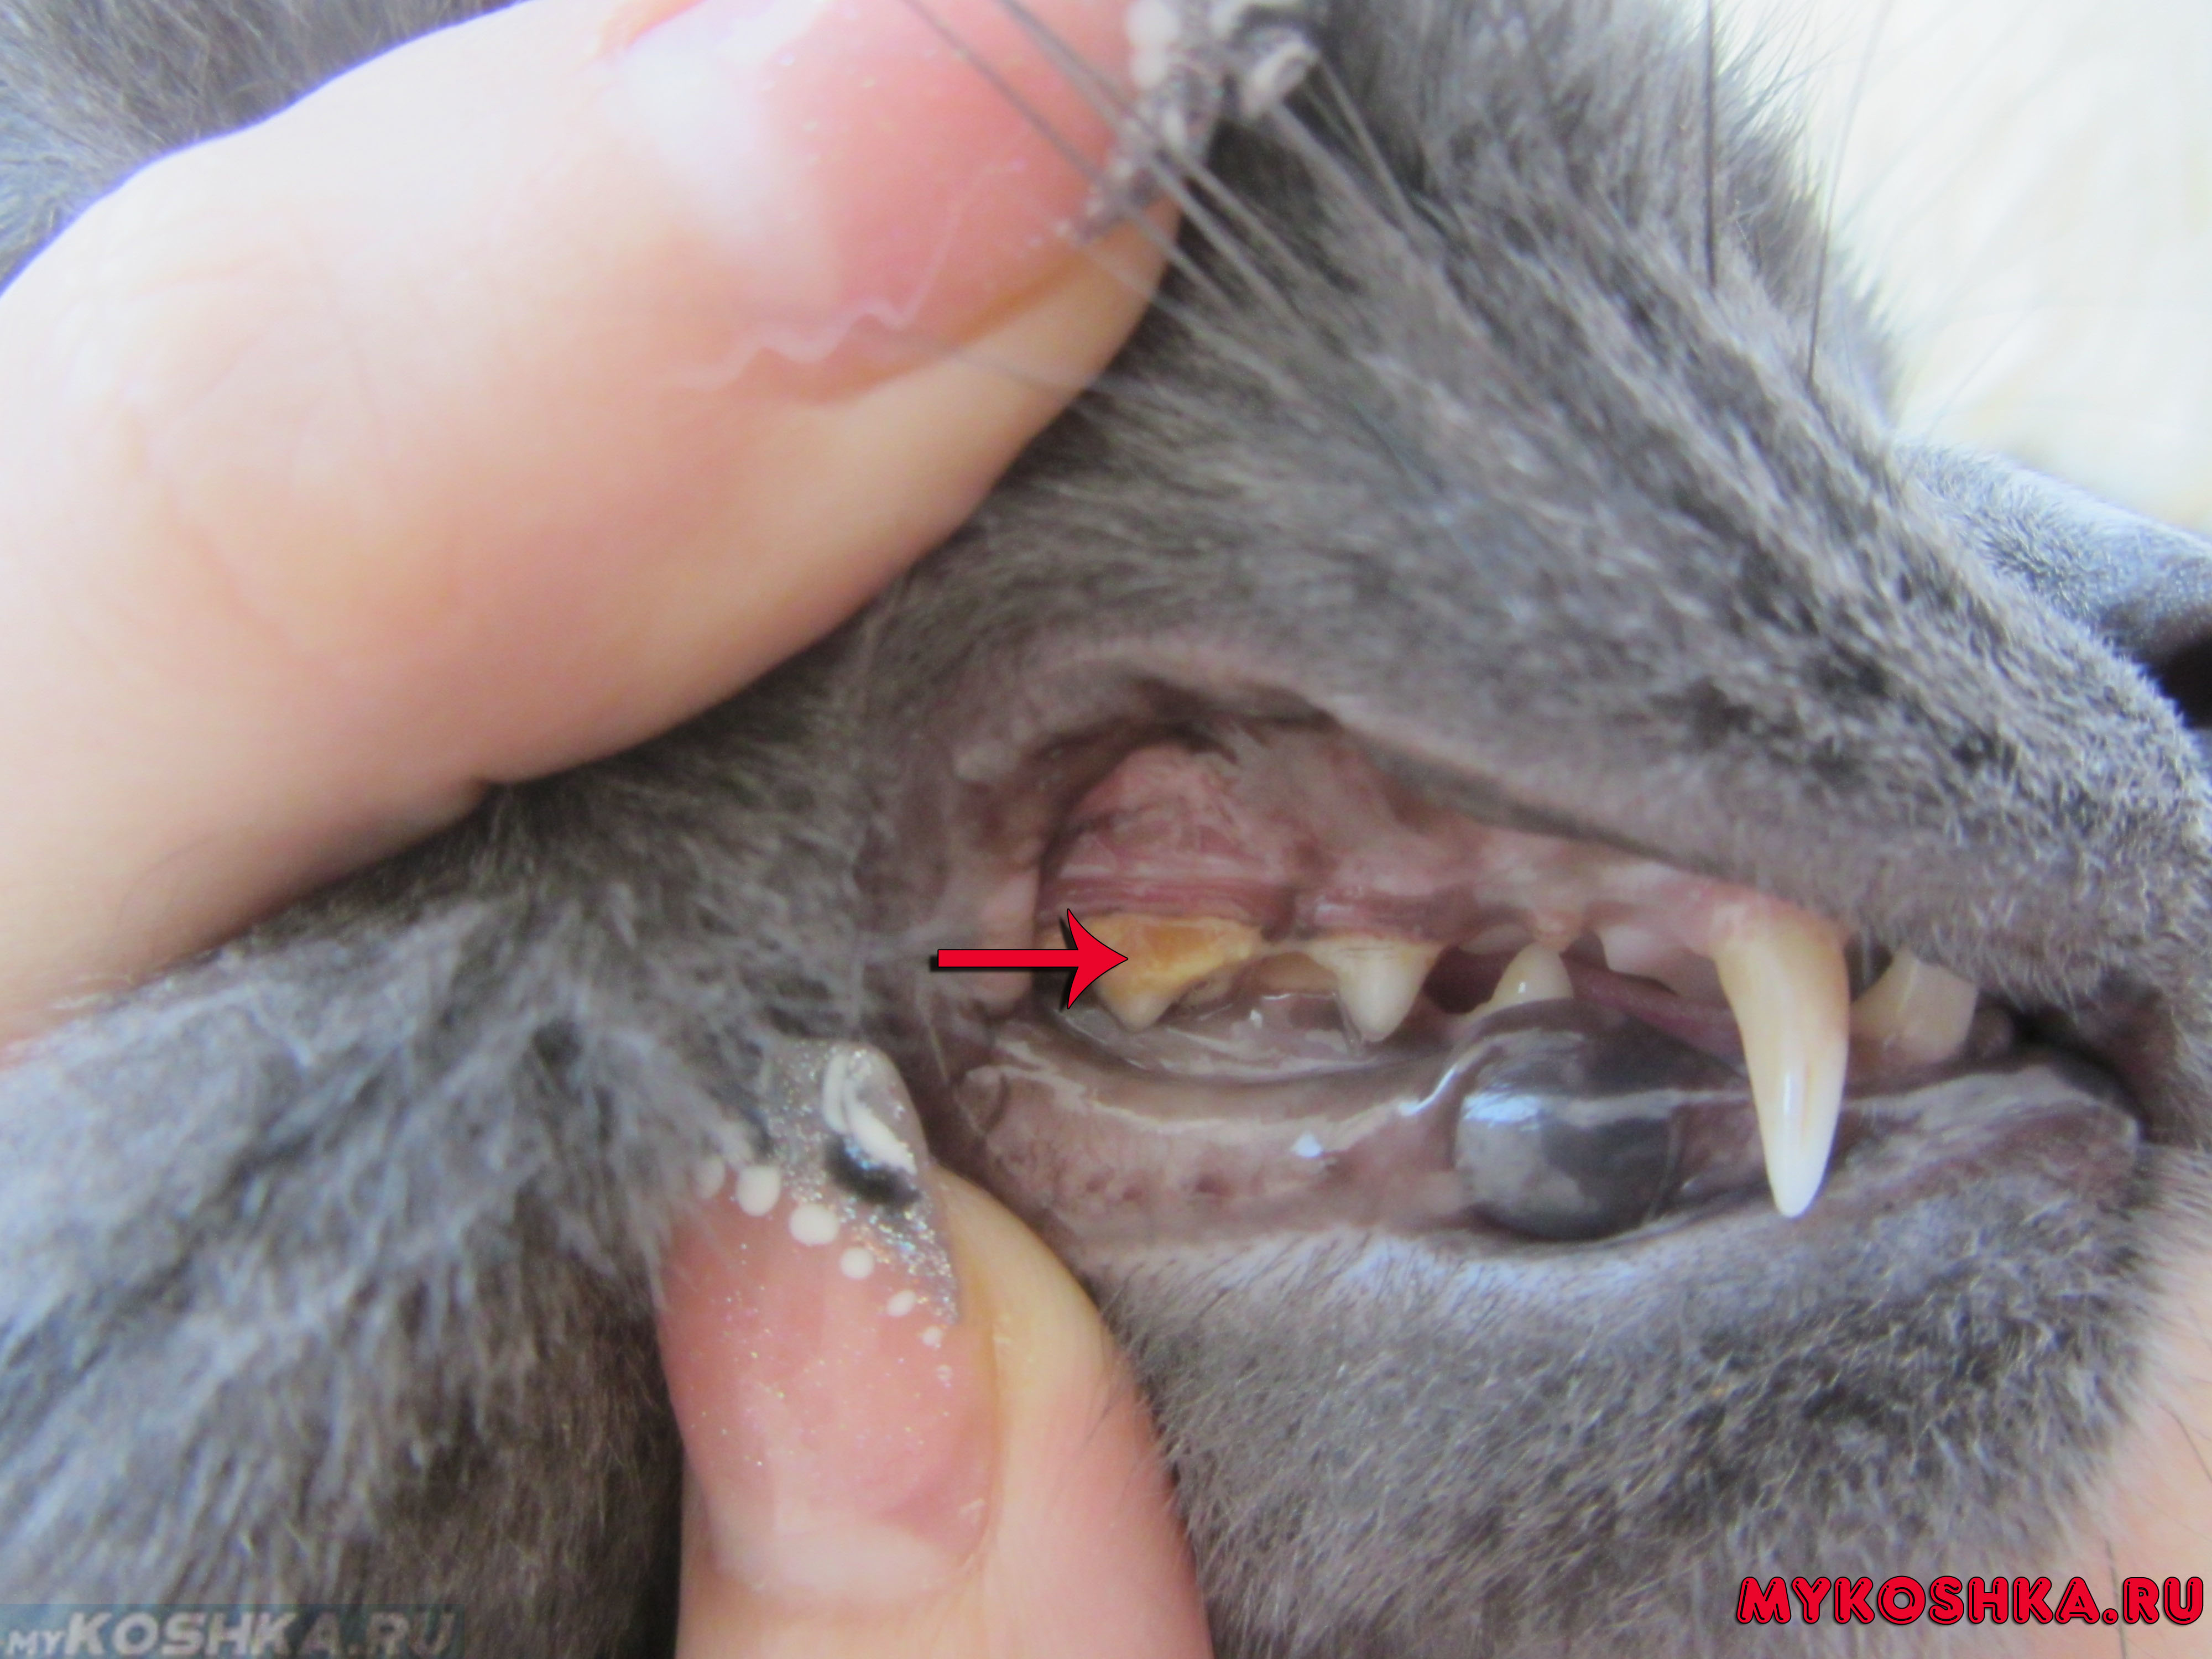 Кошка во время еды скрипит зубами как-будто что-то жуёт, что делать?